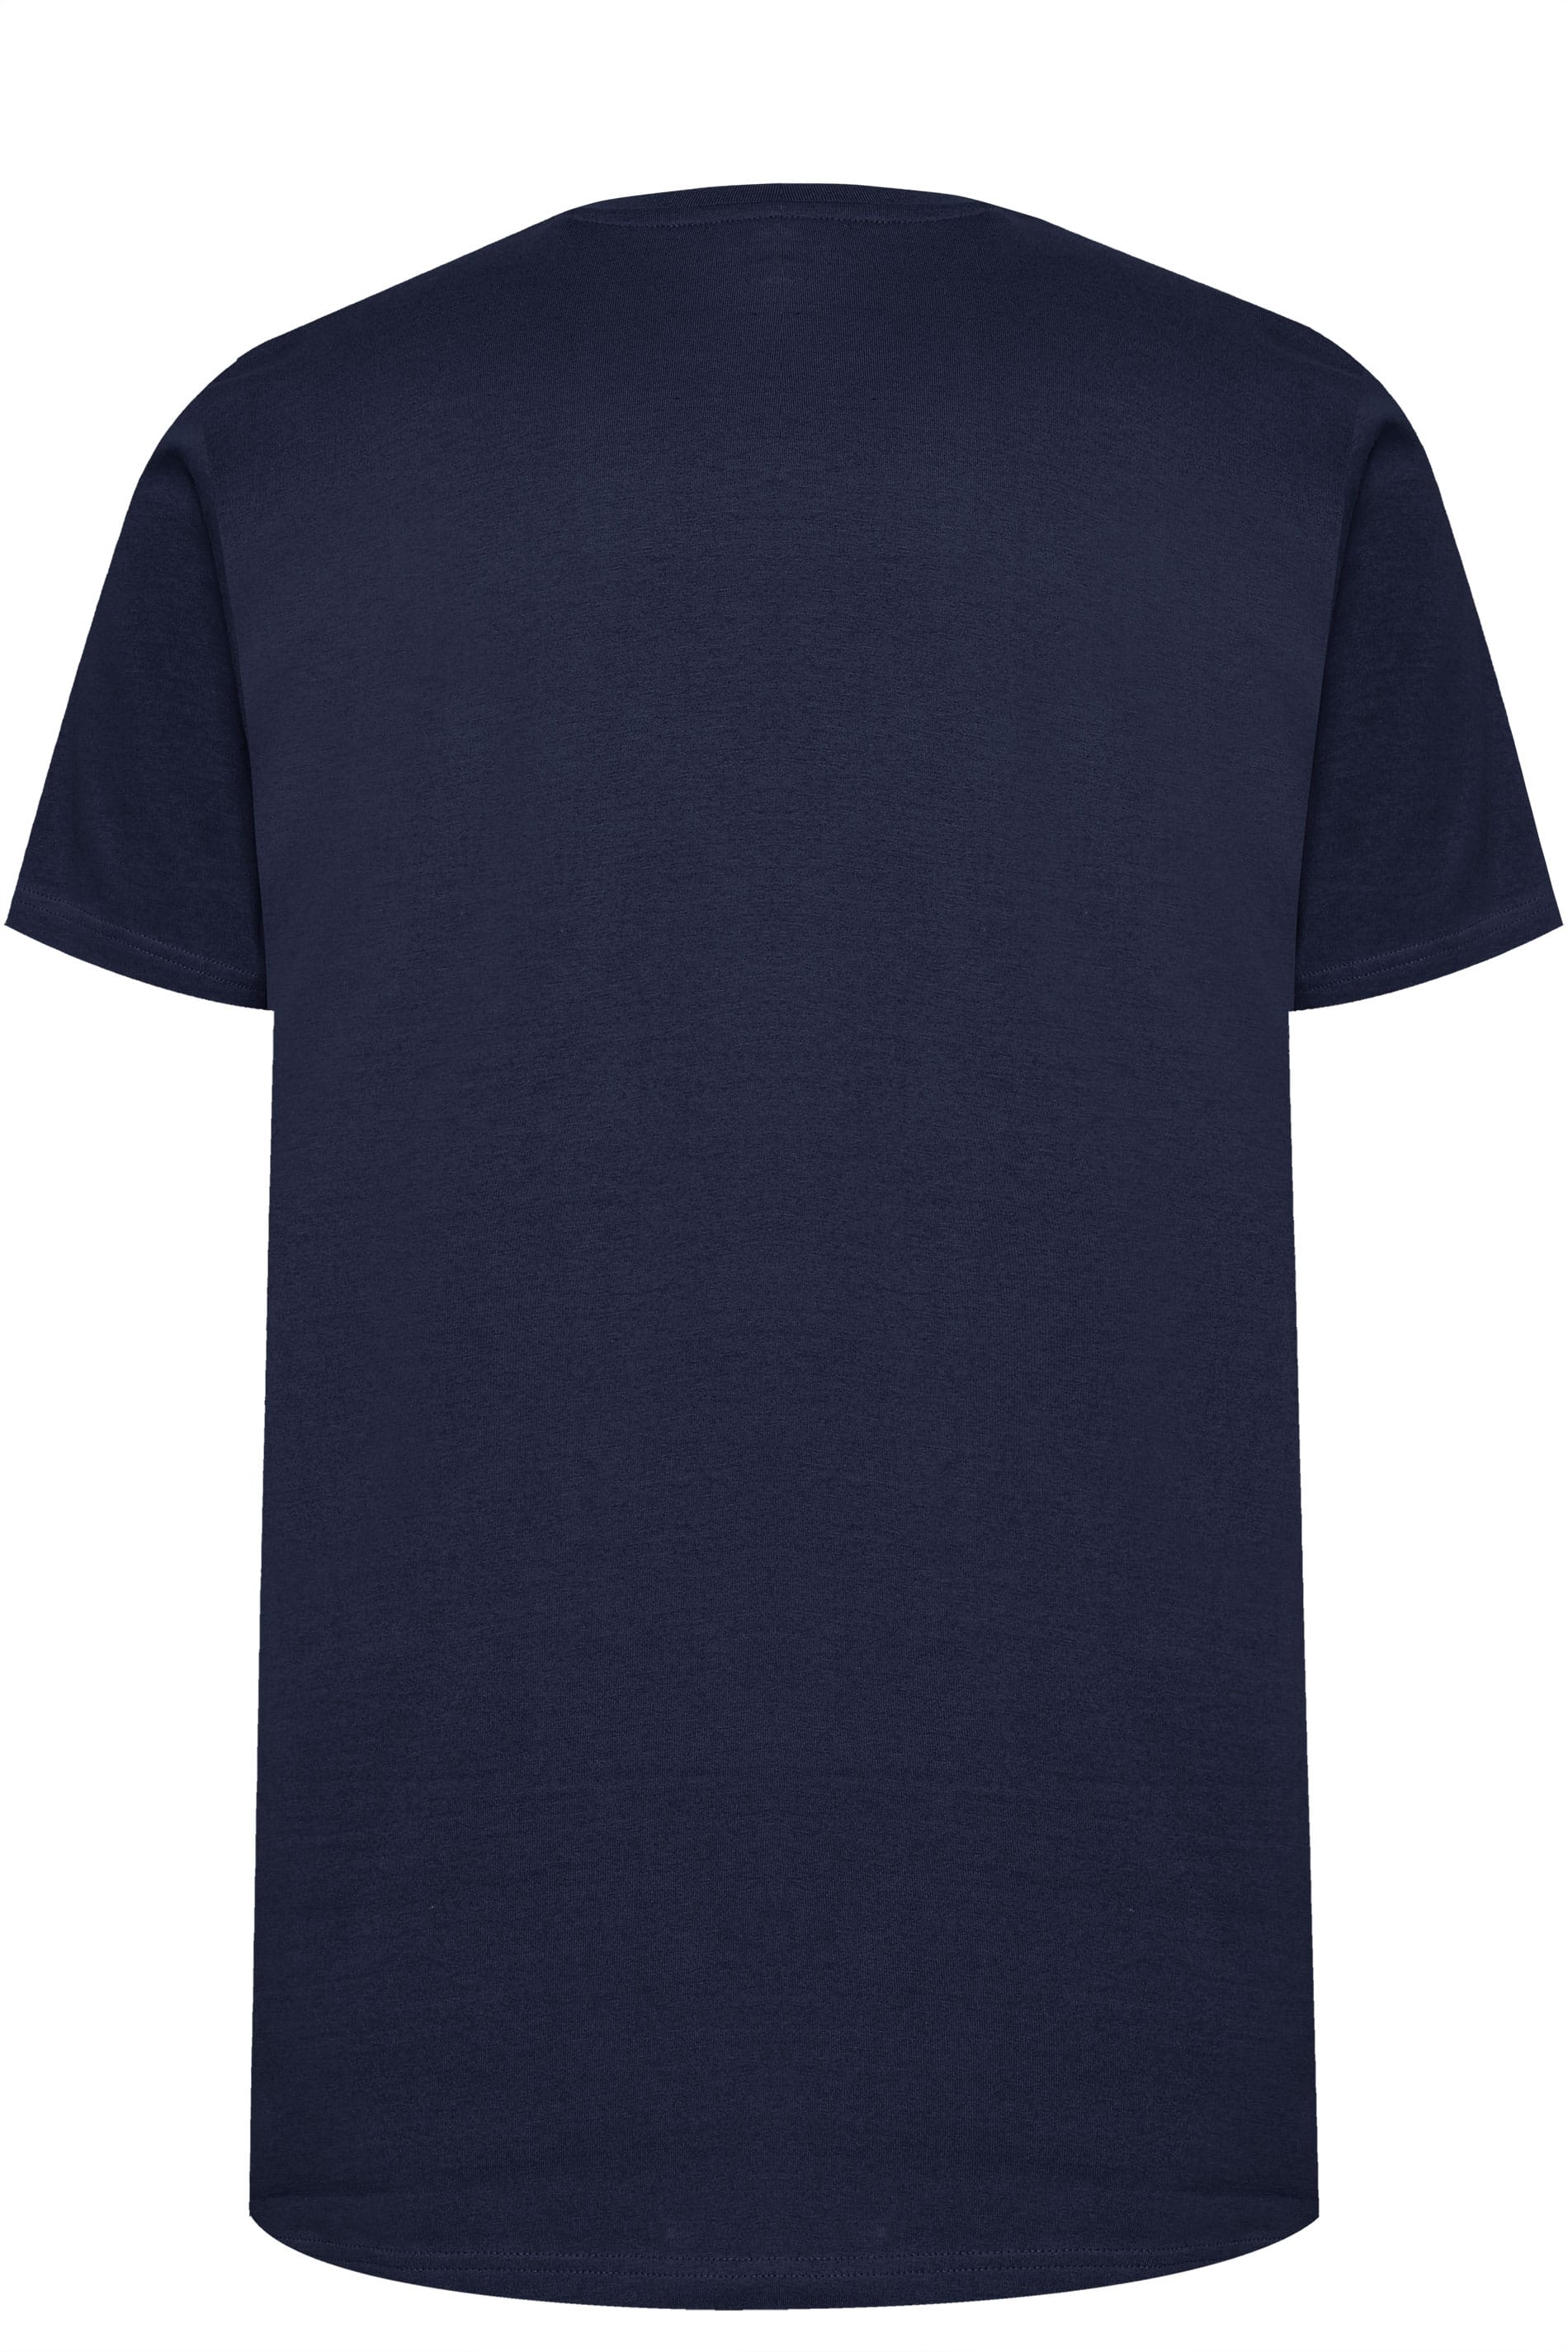 BadRhino Plain Navy Crew Neck T-Shirt | Sizes M to 8XL | BadRhino